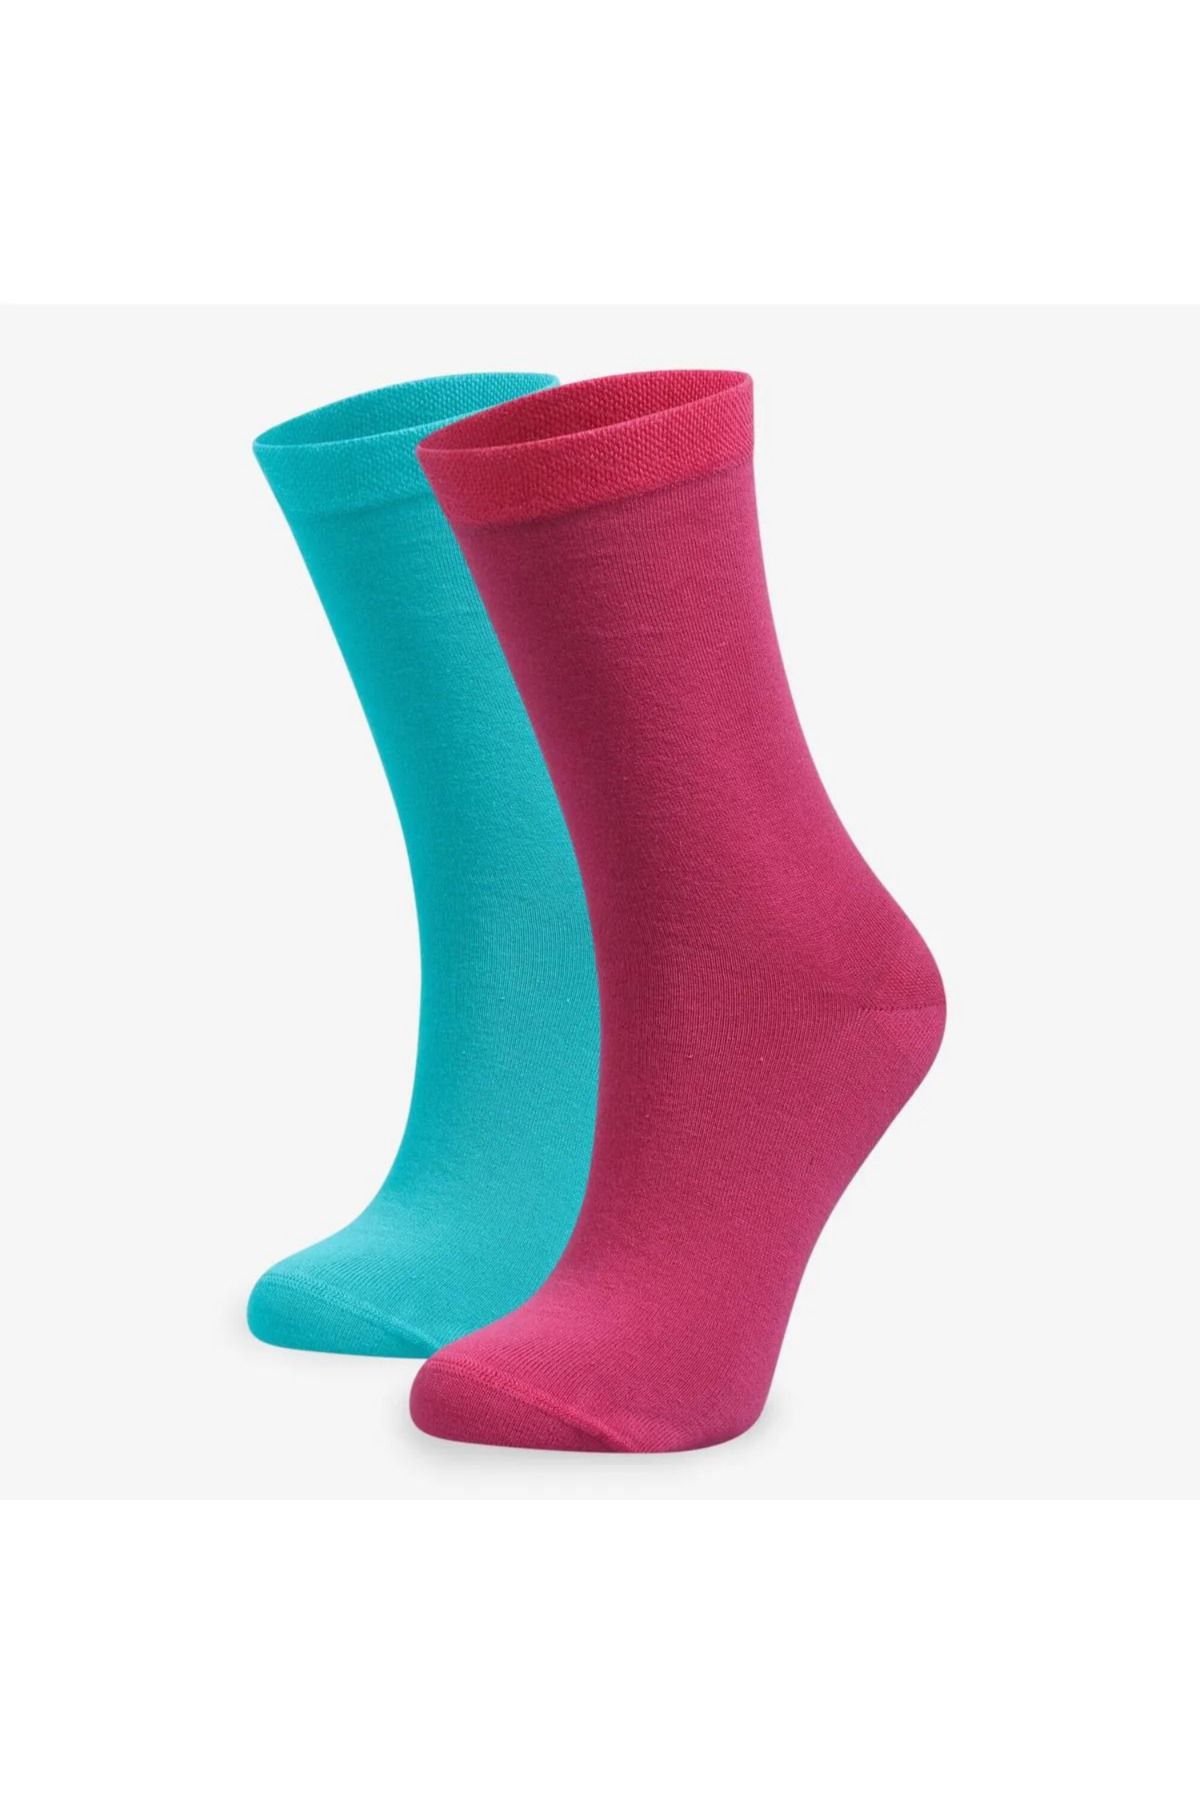 Bolero Çorap Turkuaz Pembe 2'li %100 Organik Kadın Pamuk Çorap